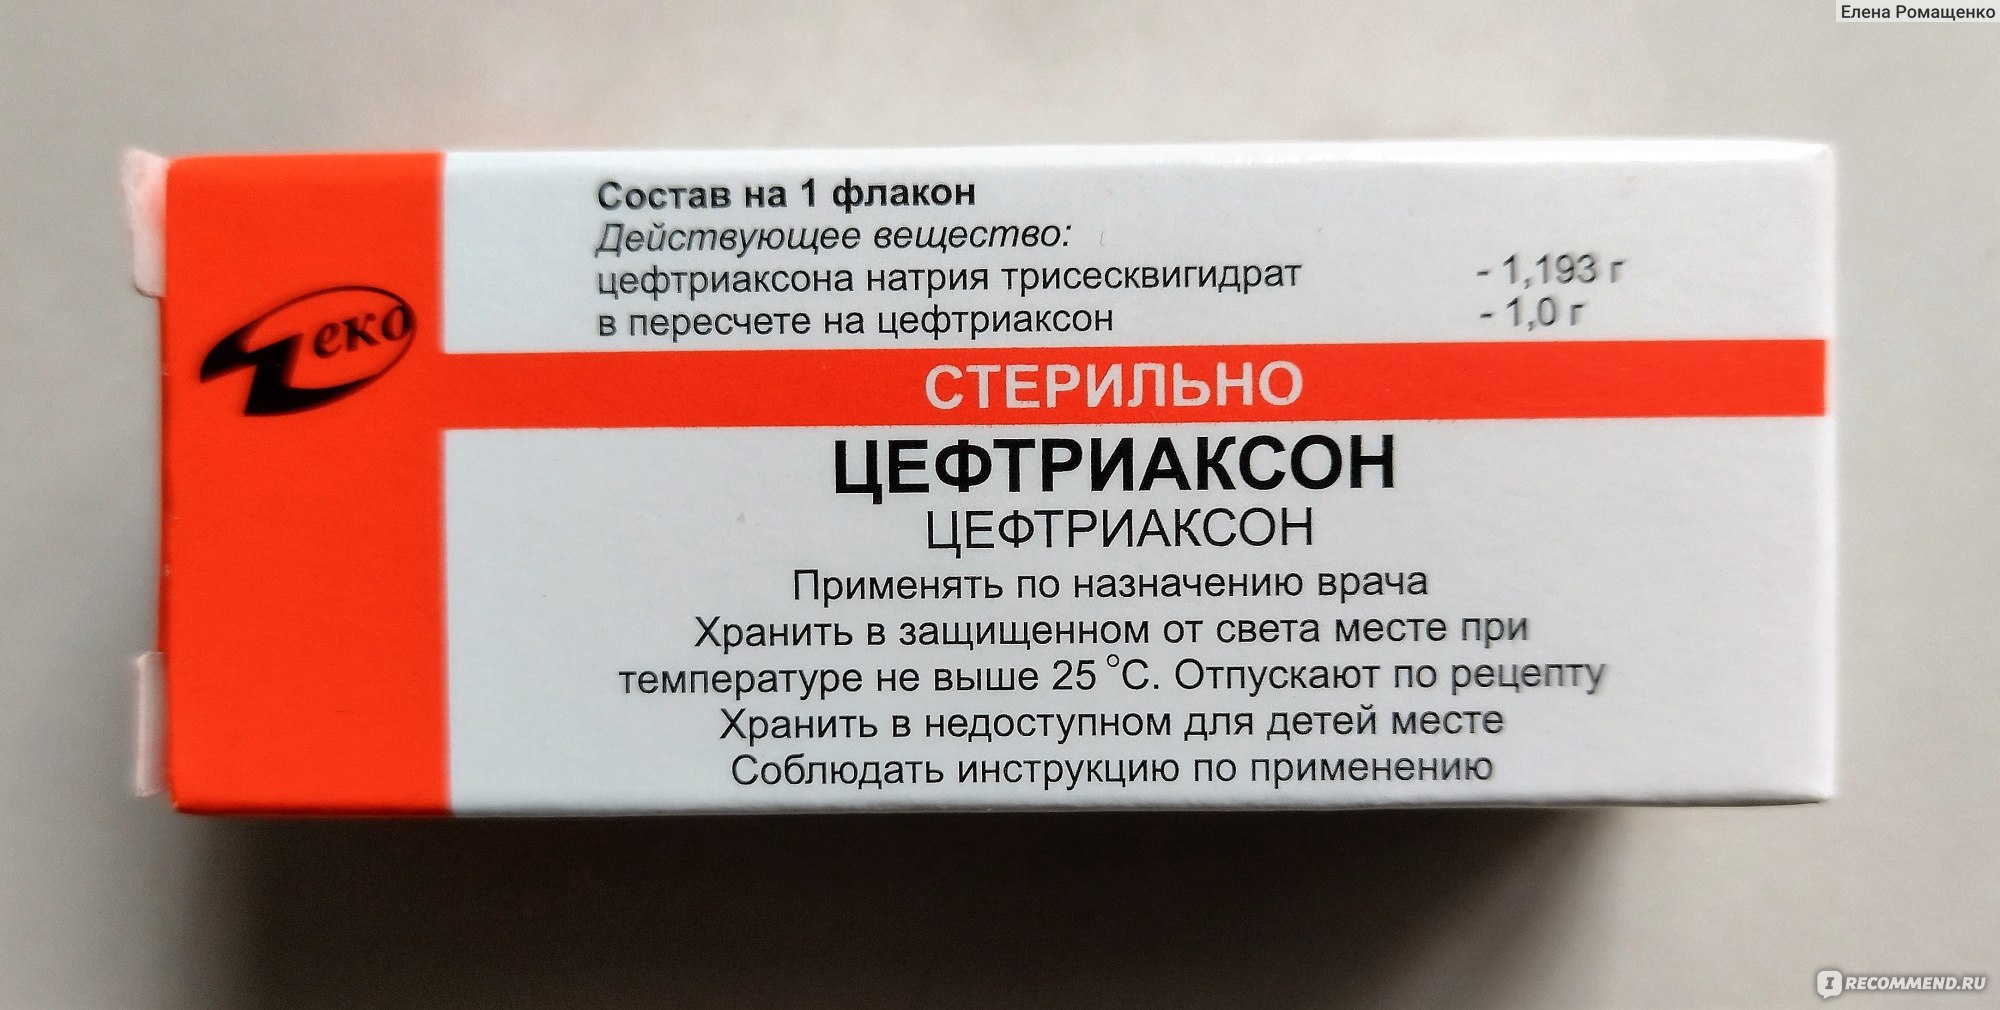 Цеф III® (Цефтриаксон) 500 мг (1г в пачке) порошок для приготовления раствора для инъекций